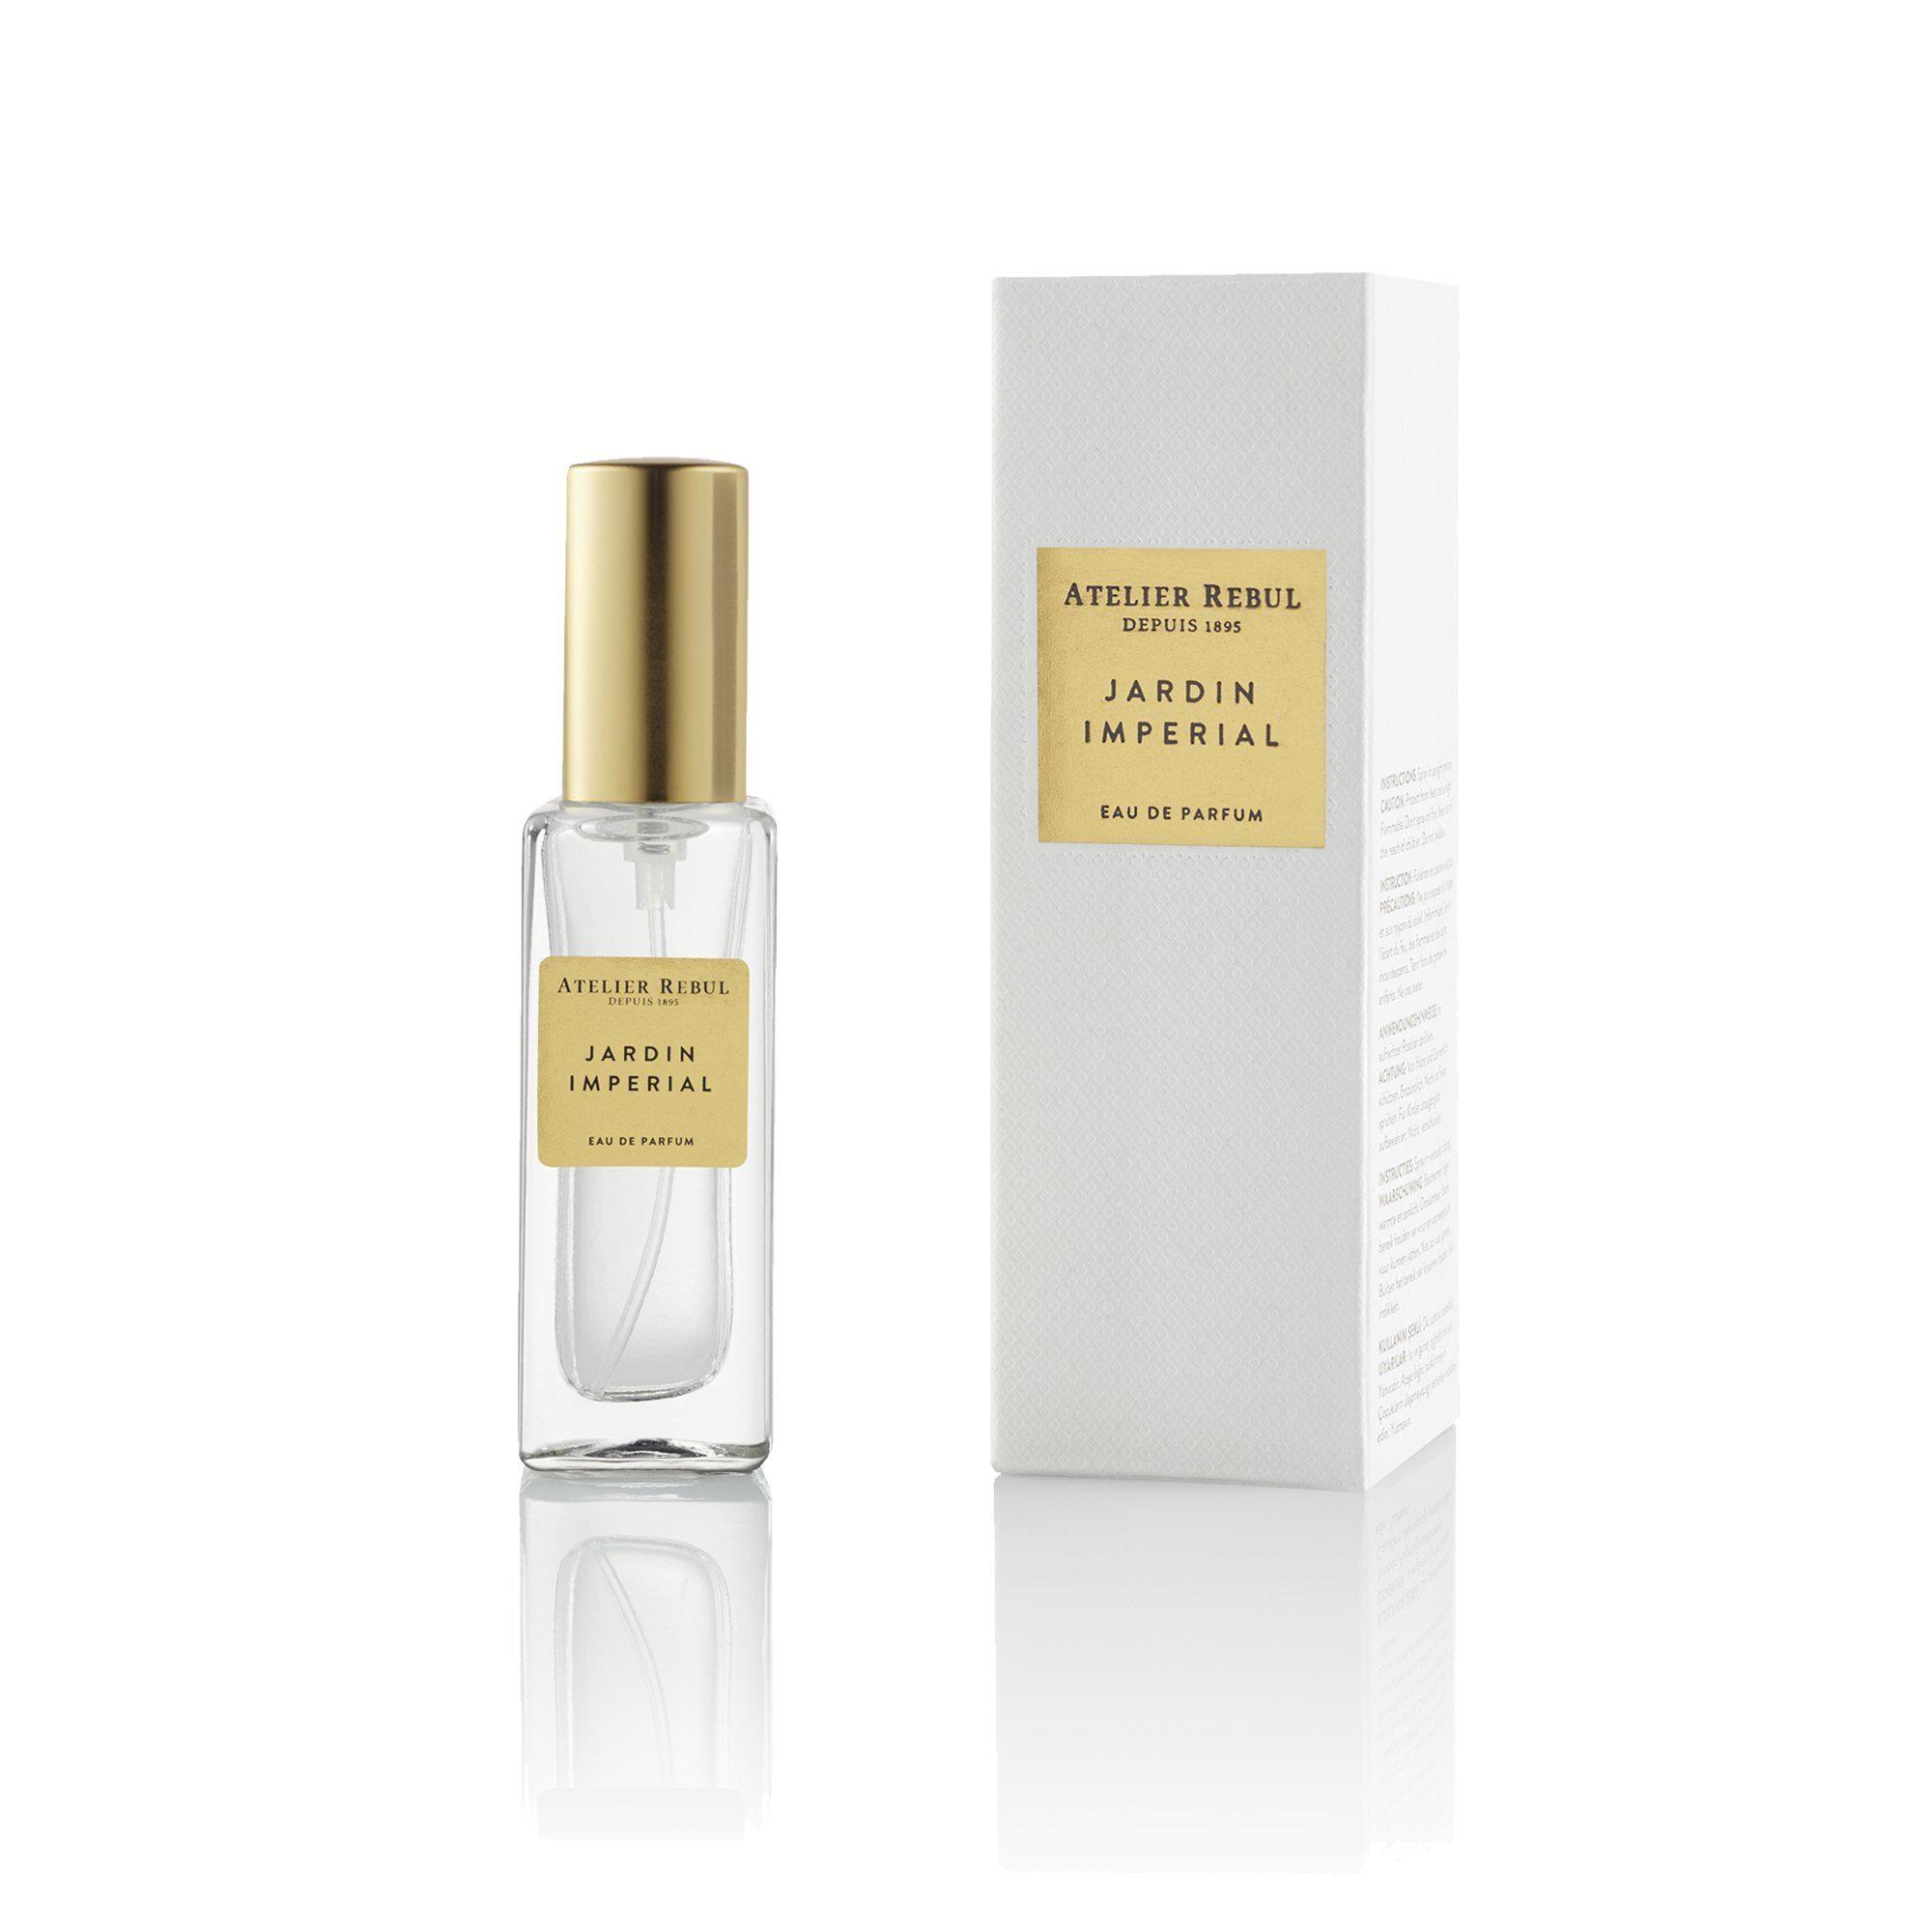 Atelier Rebul Jardin Imperial Eau de Parfum 12ml for Women - MeMeMe Gifts